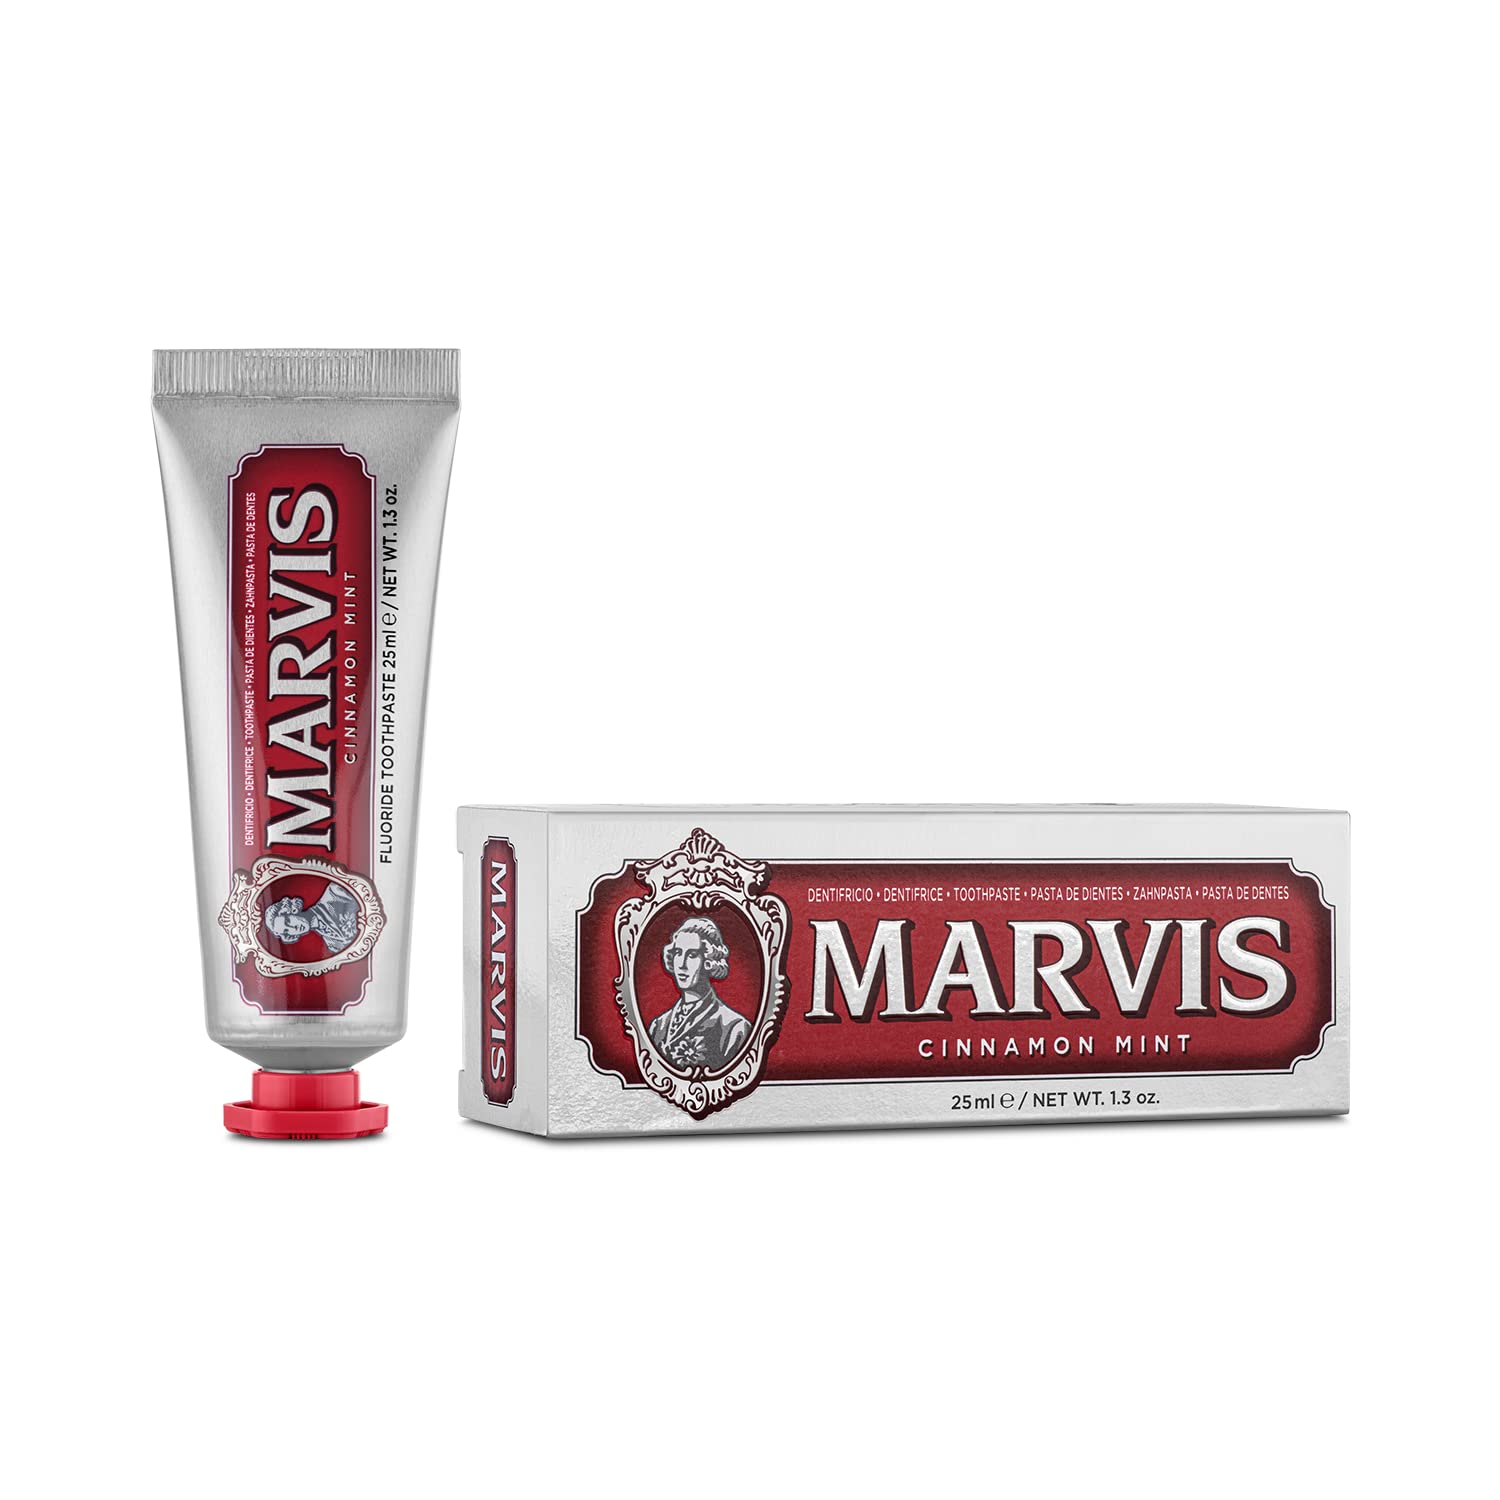 OUTLET – PACK 2 – Pasta de dientes Cinamon mint  – 25ml | MARVIS